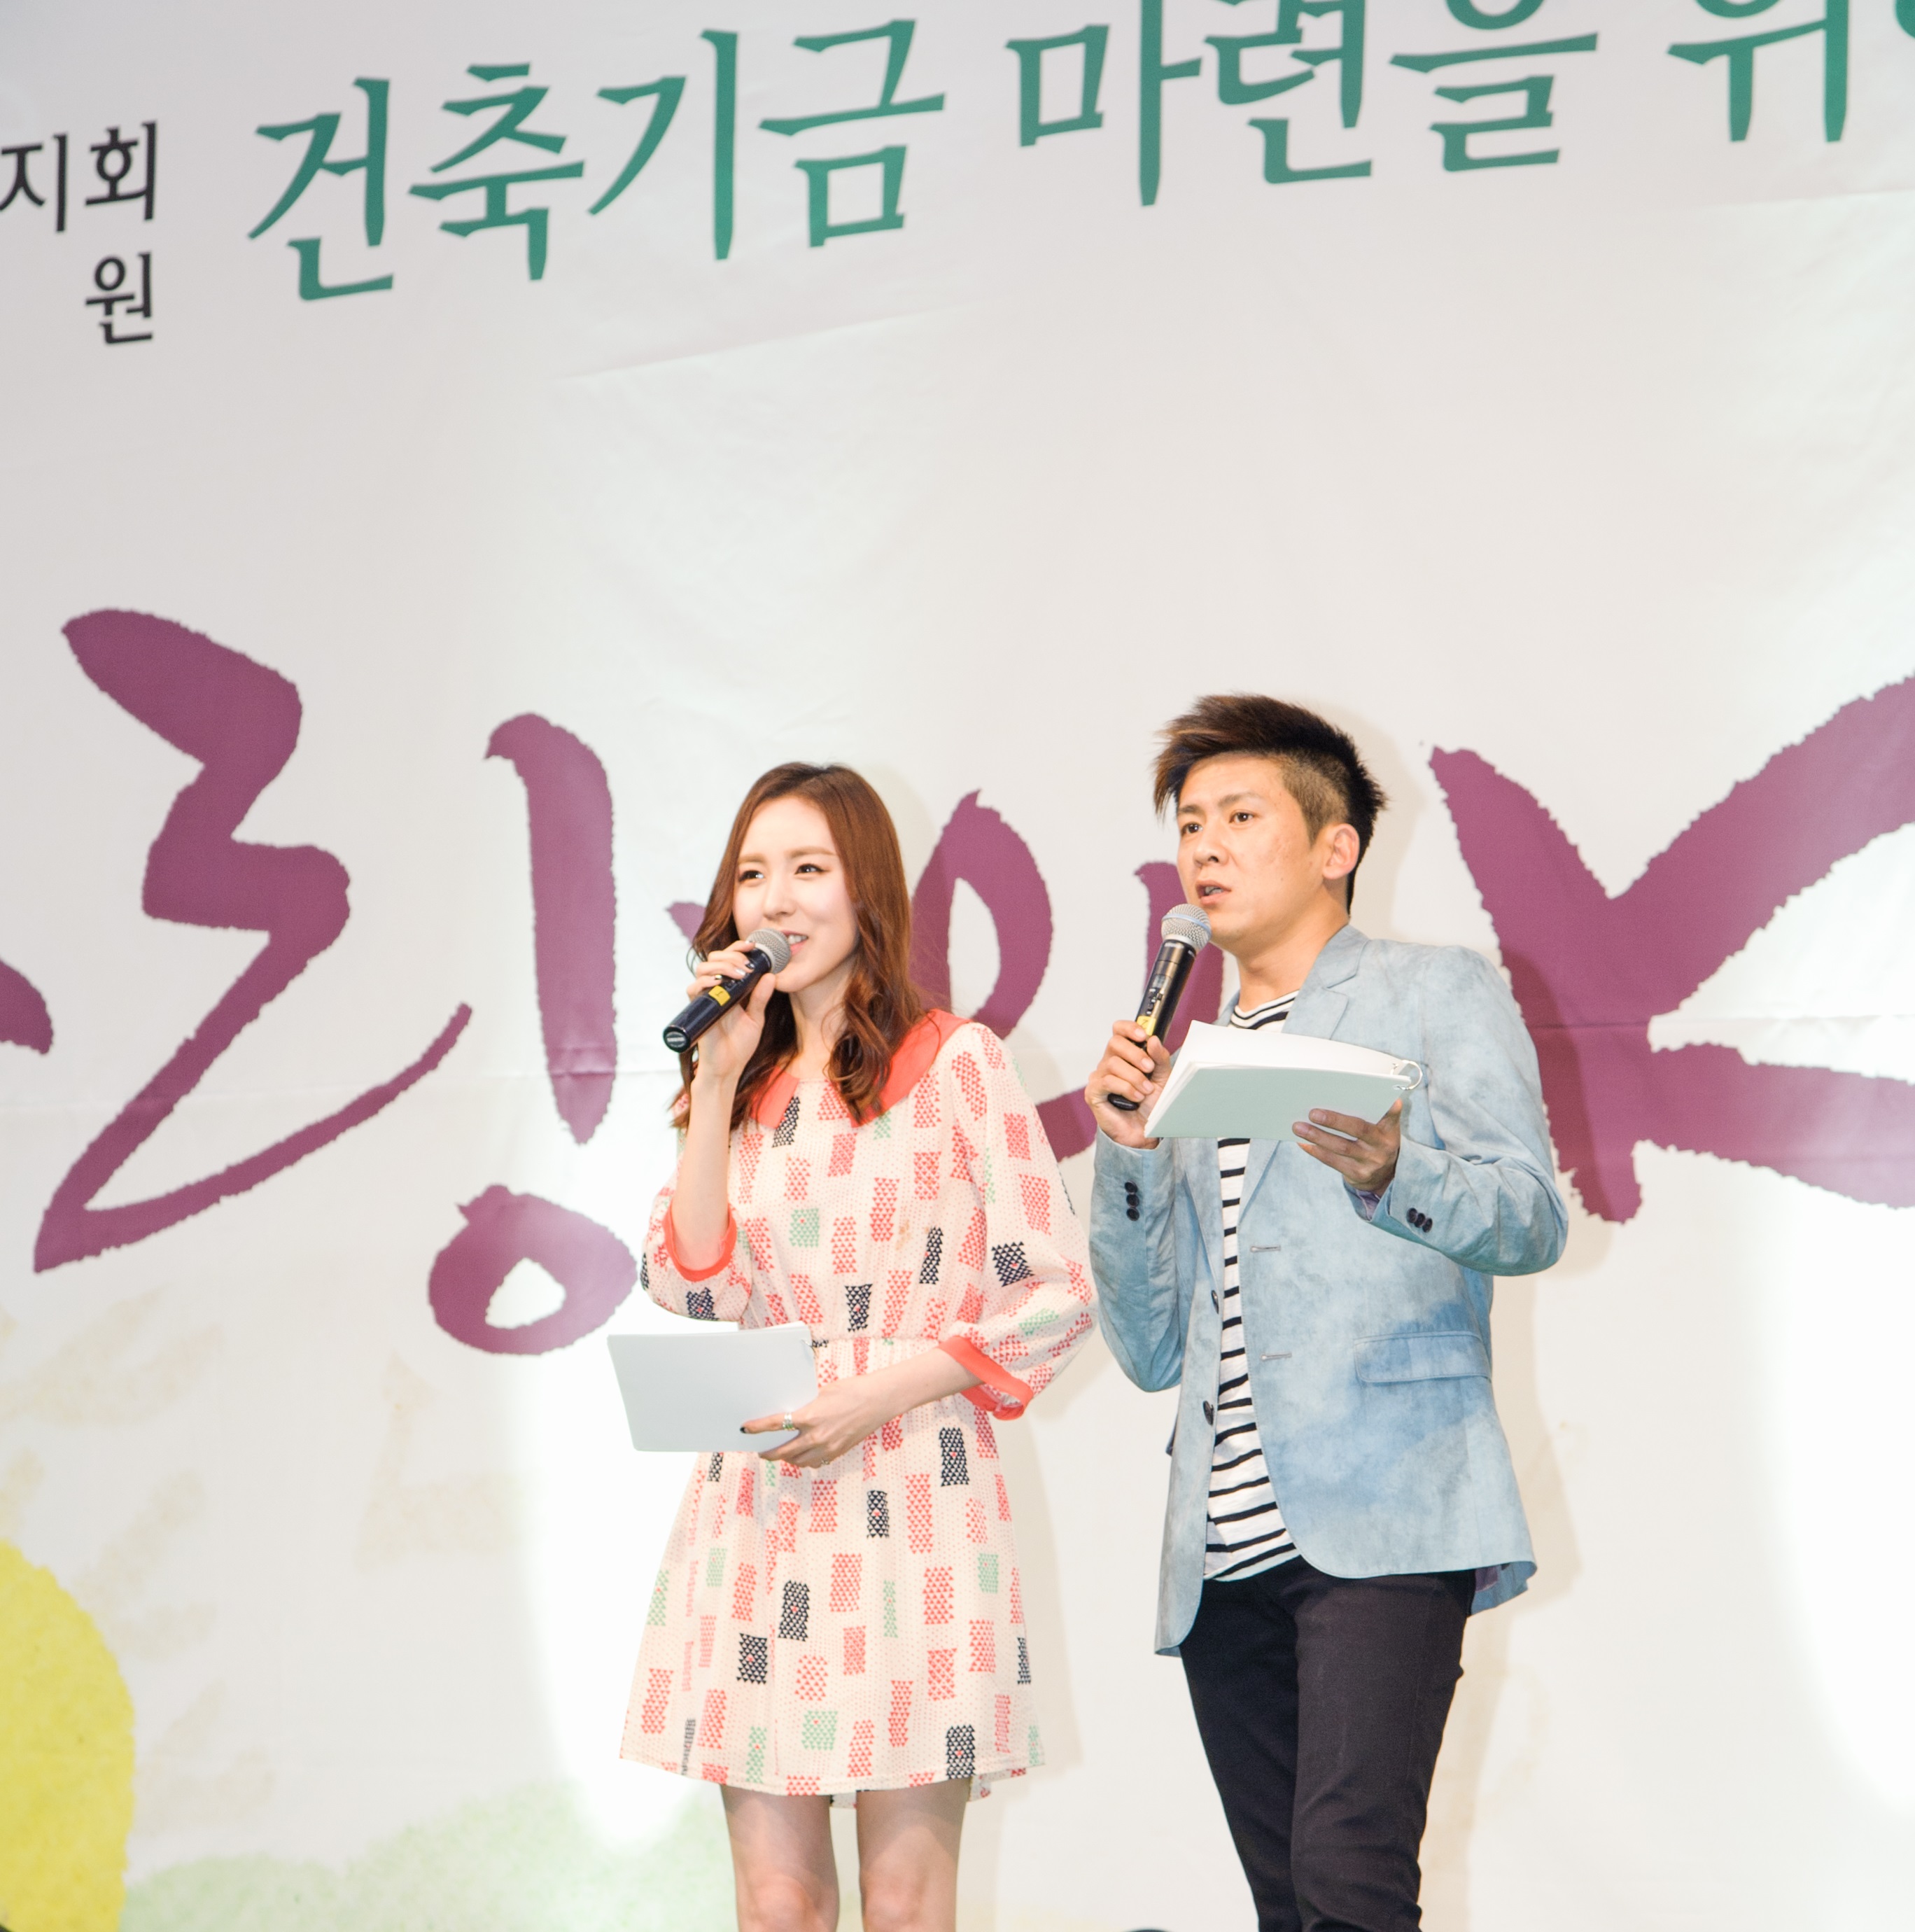 간미연-홍경민, 암사재활원 장애아동 위한 콘서트 개최